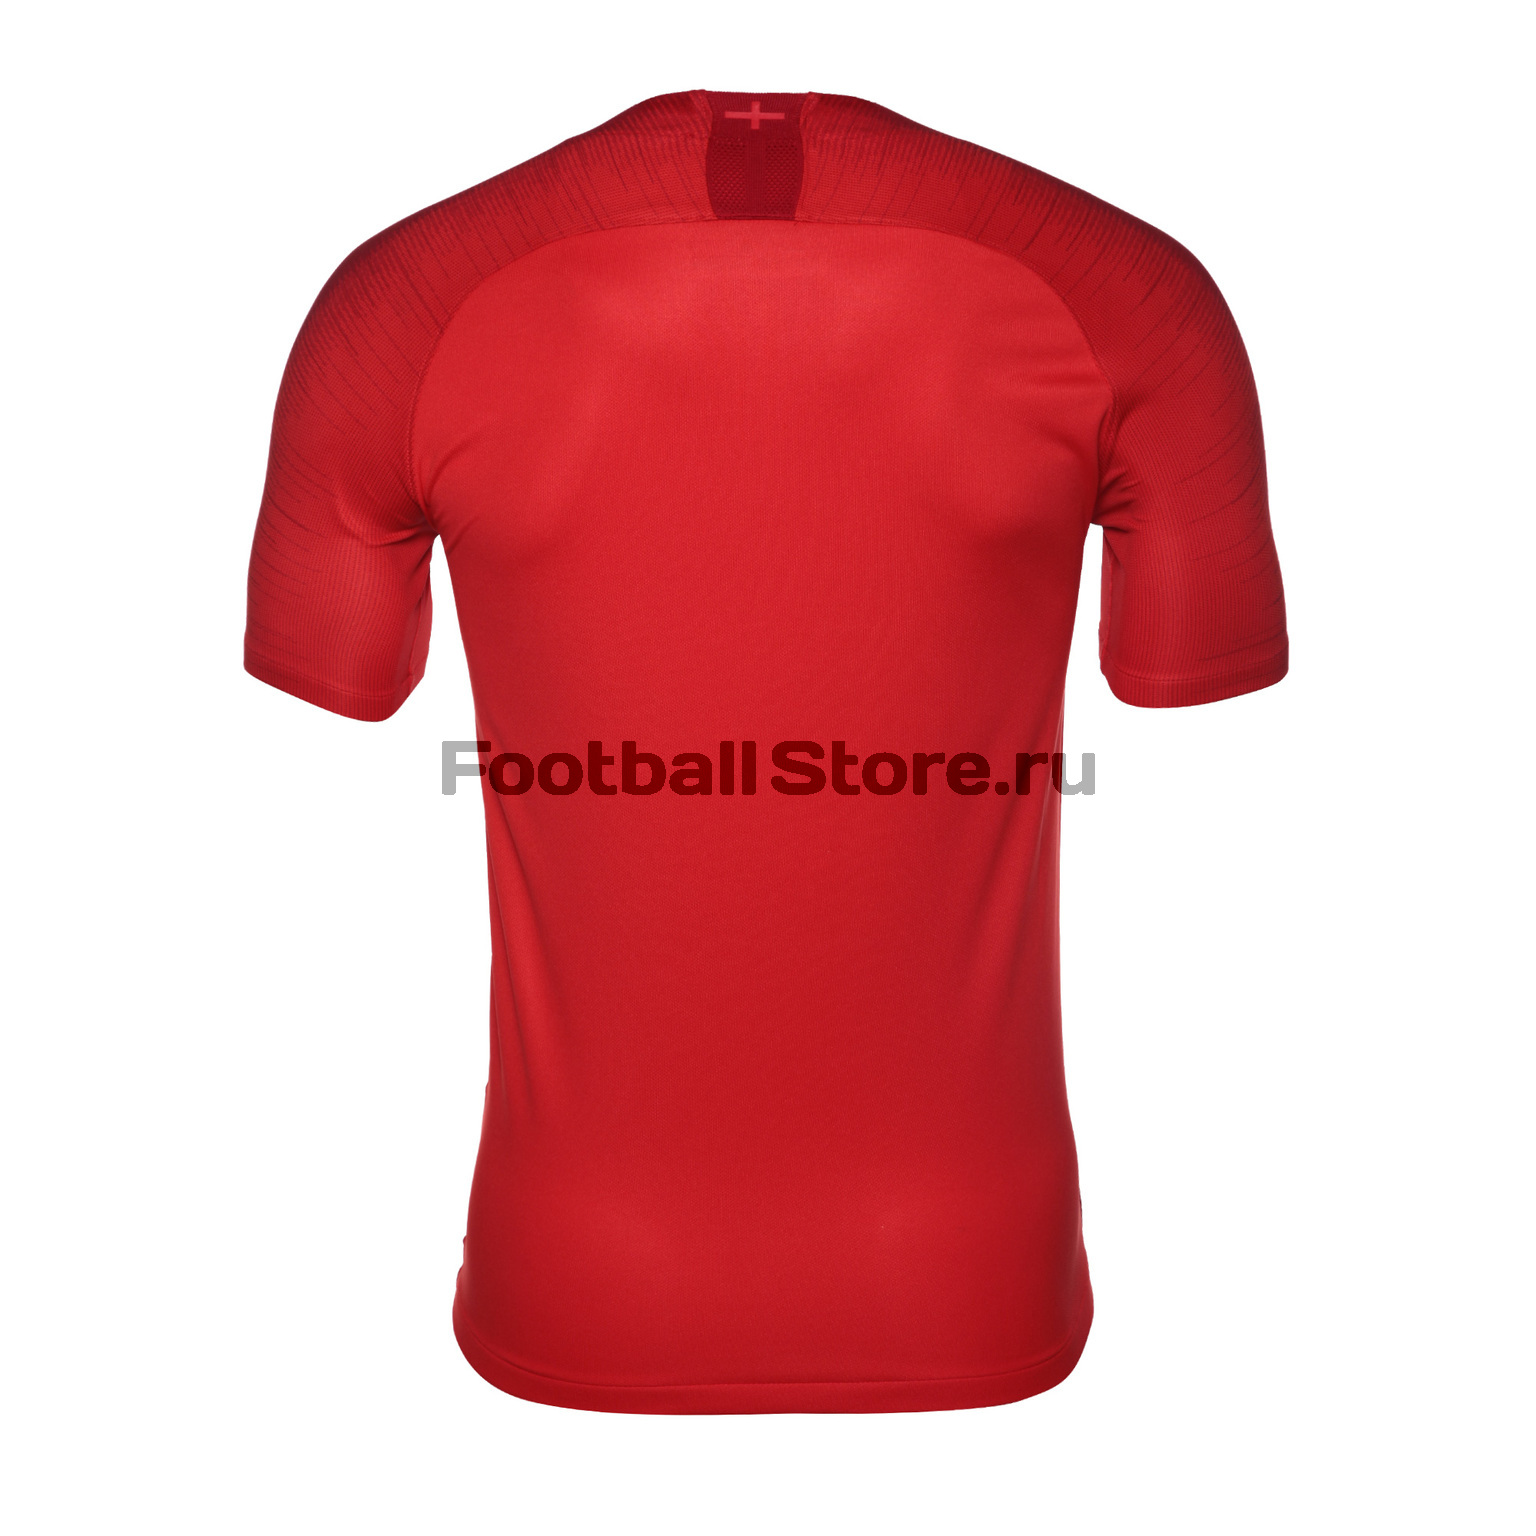 Игровая гостевая футболка Nike сборной Англии 893867-600